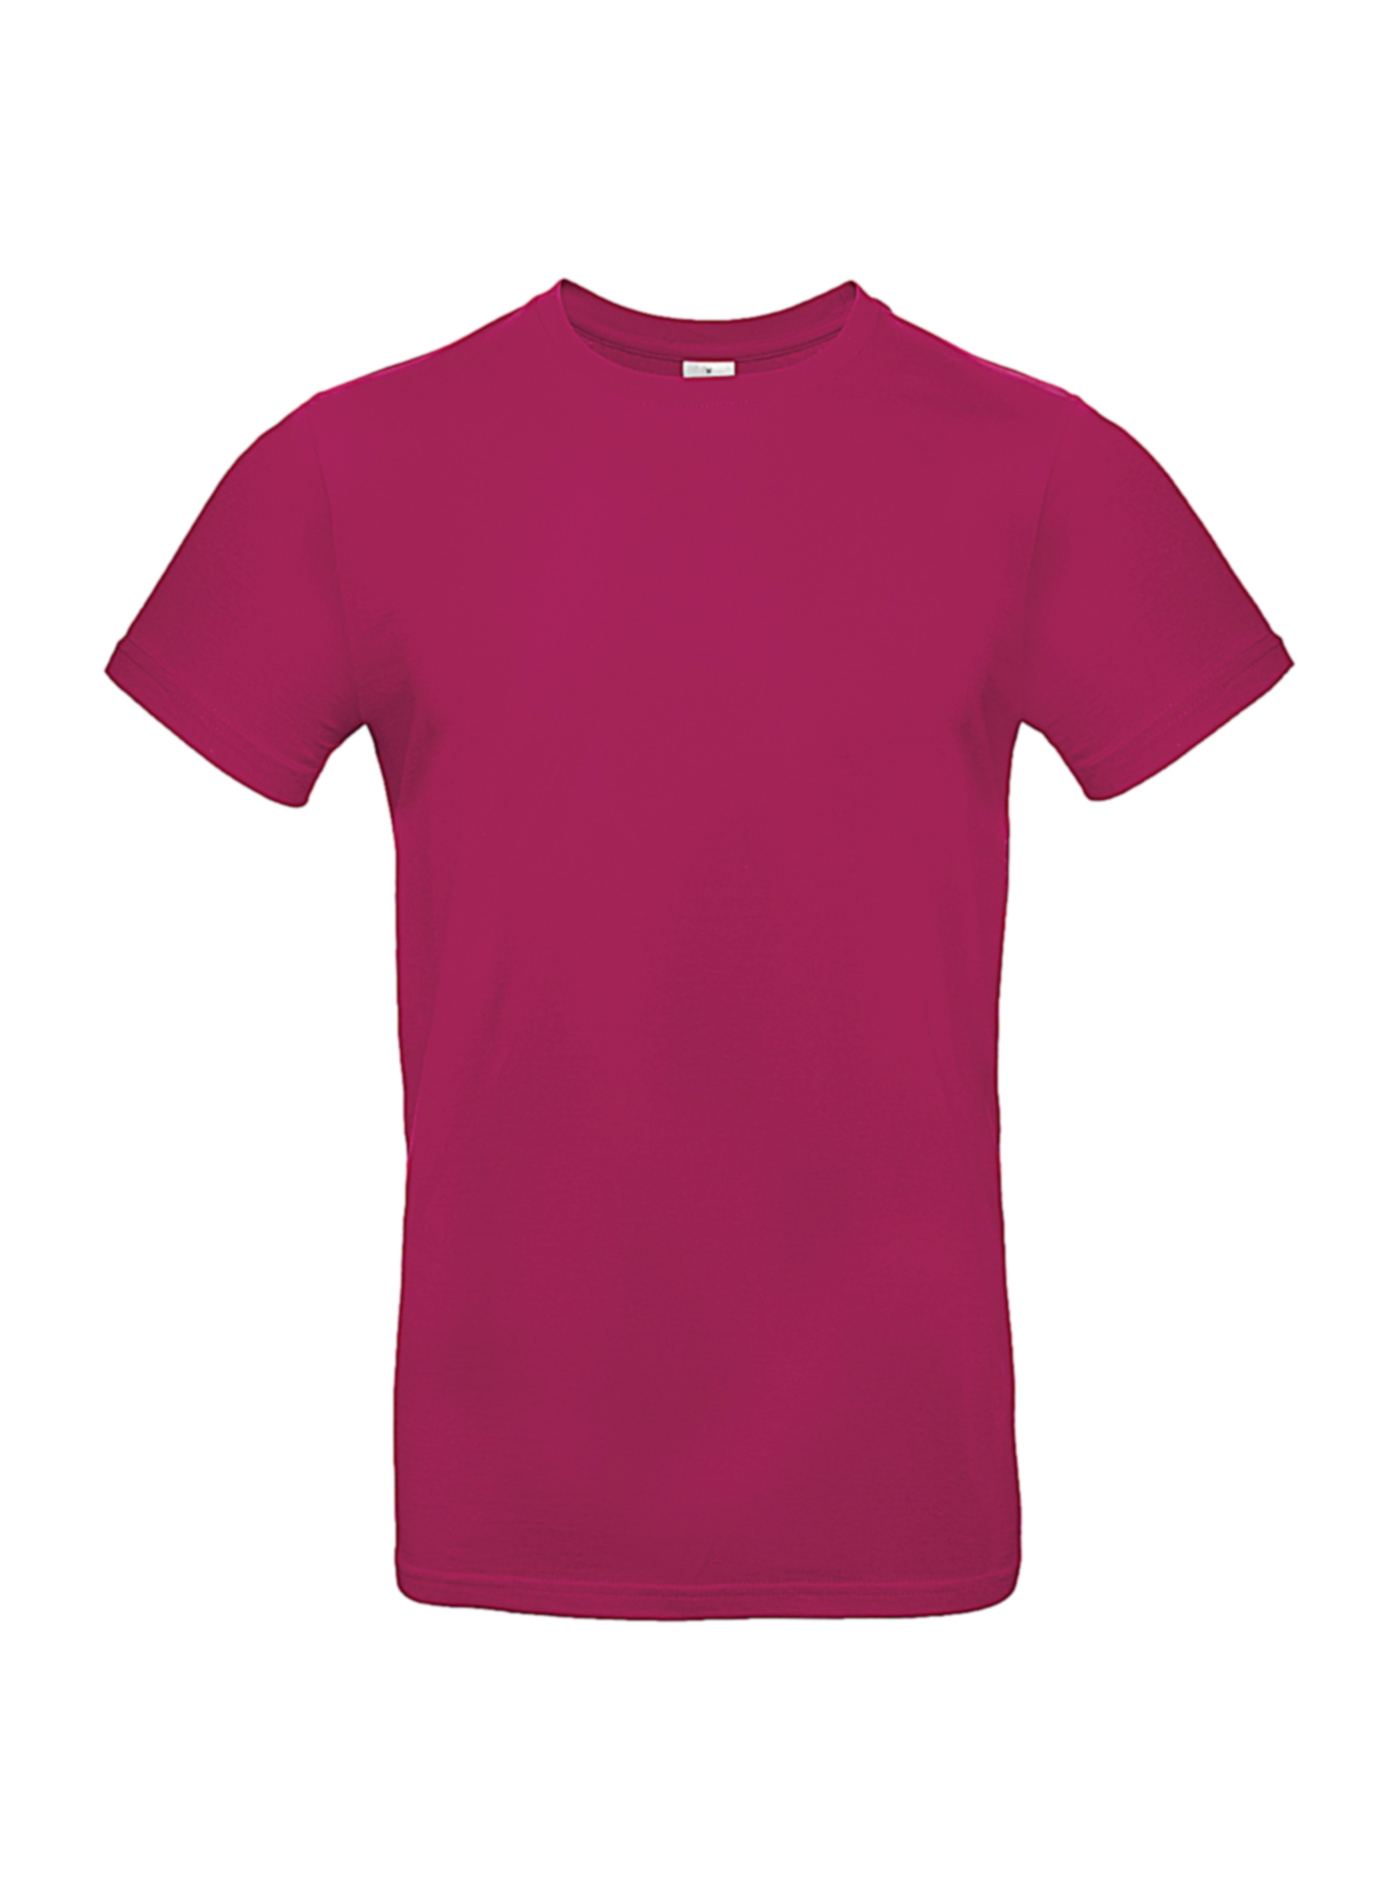 Silnější bavlněné pánské tričko - Tmavě růžová XS